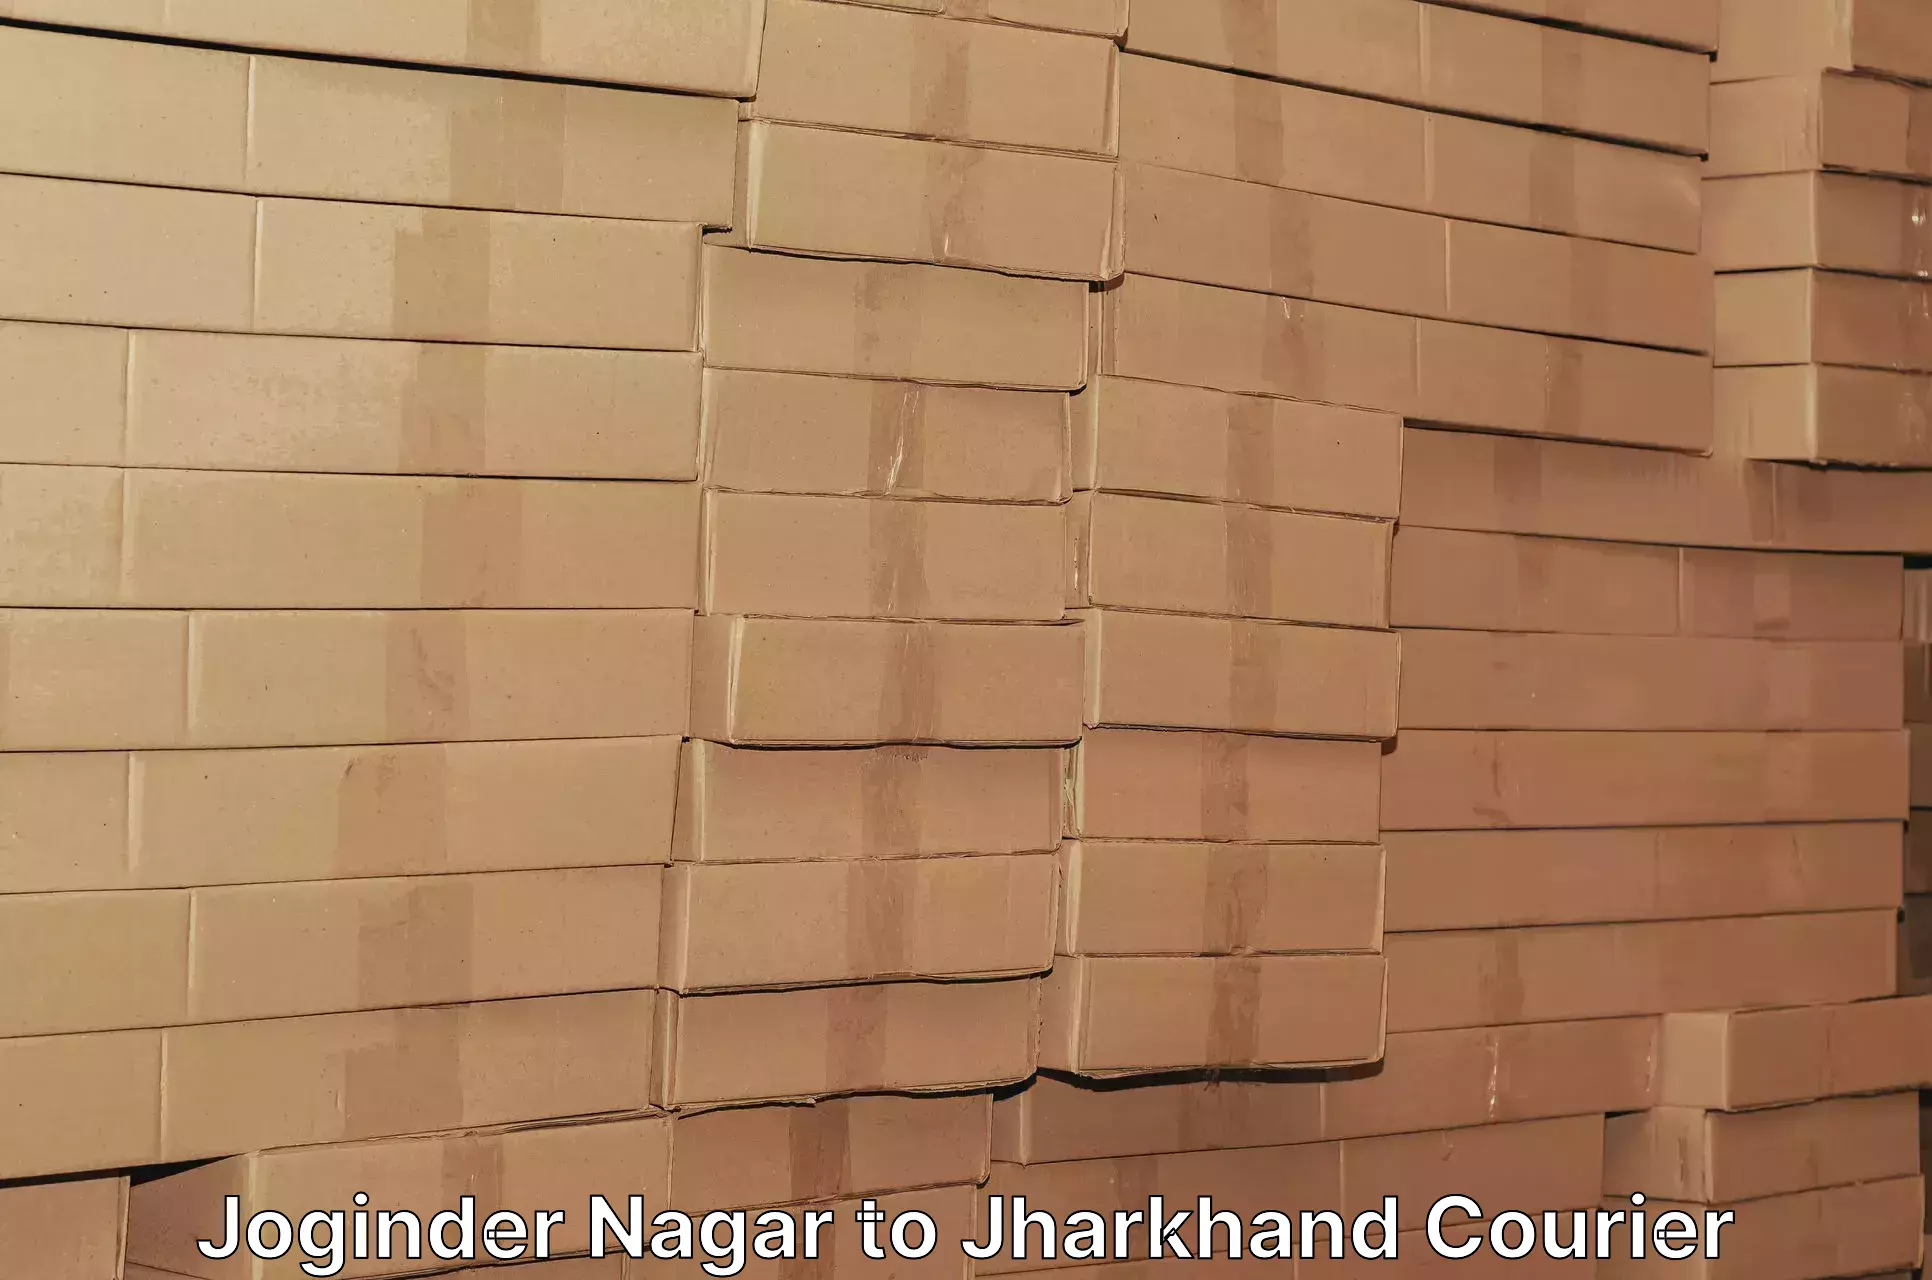 Nationwide delivery network Joginder Nagar to Chandil